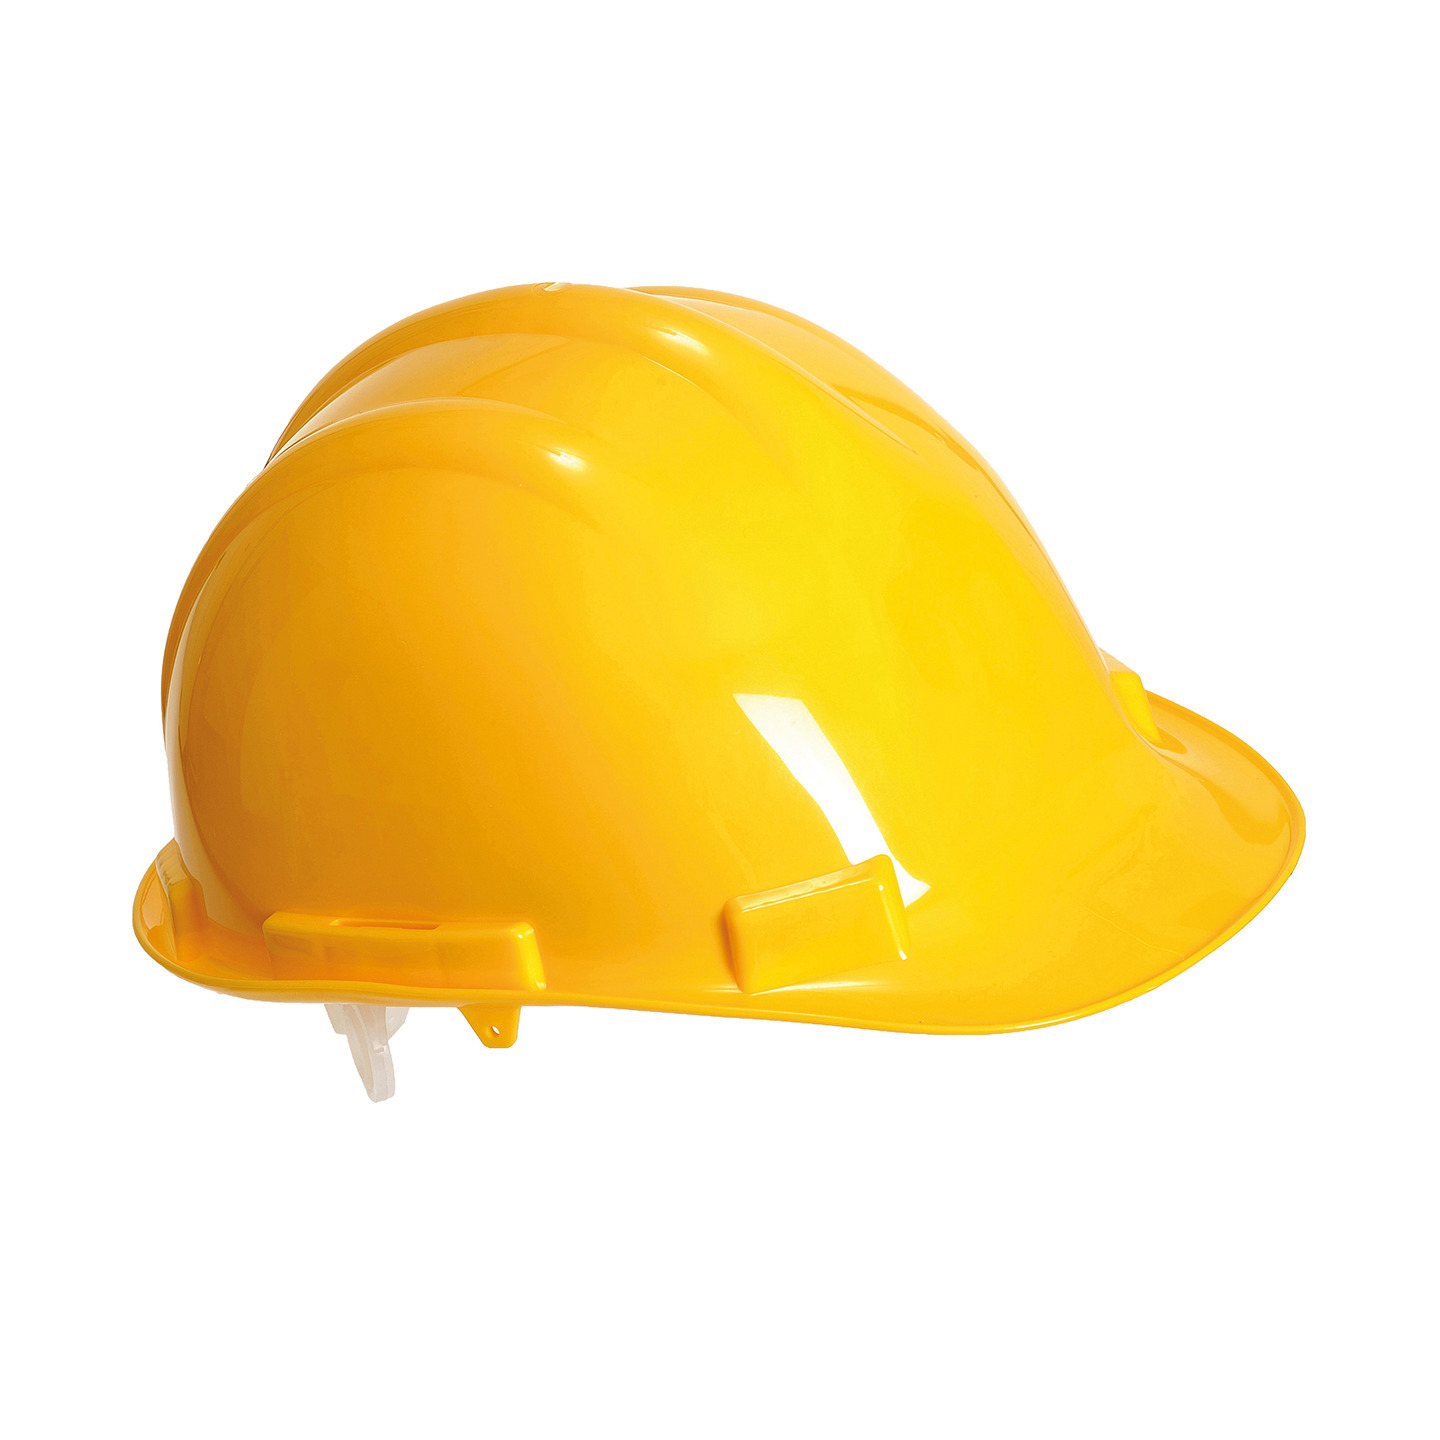 Set van 4x stuks veiligheidshelmen-bouwhelmen hoofdbescherming geel verstelbaar 55-62 cm